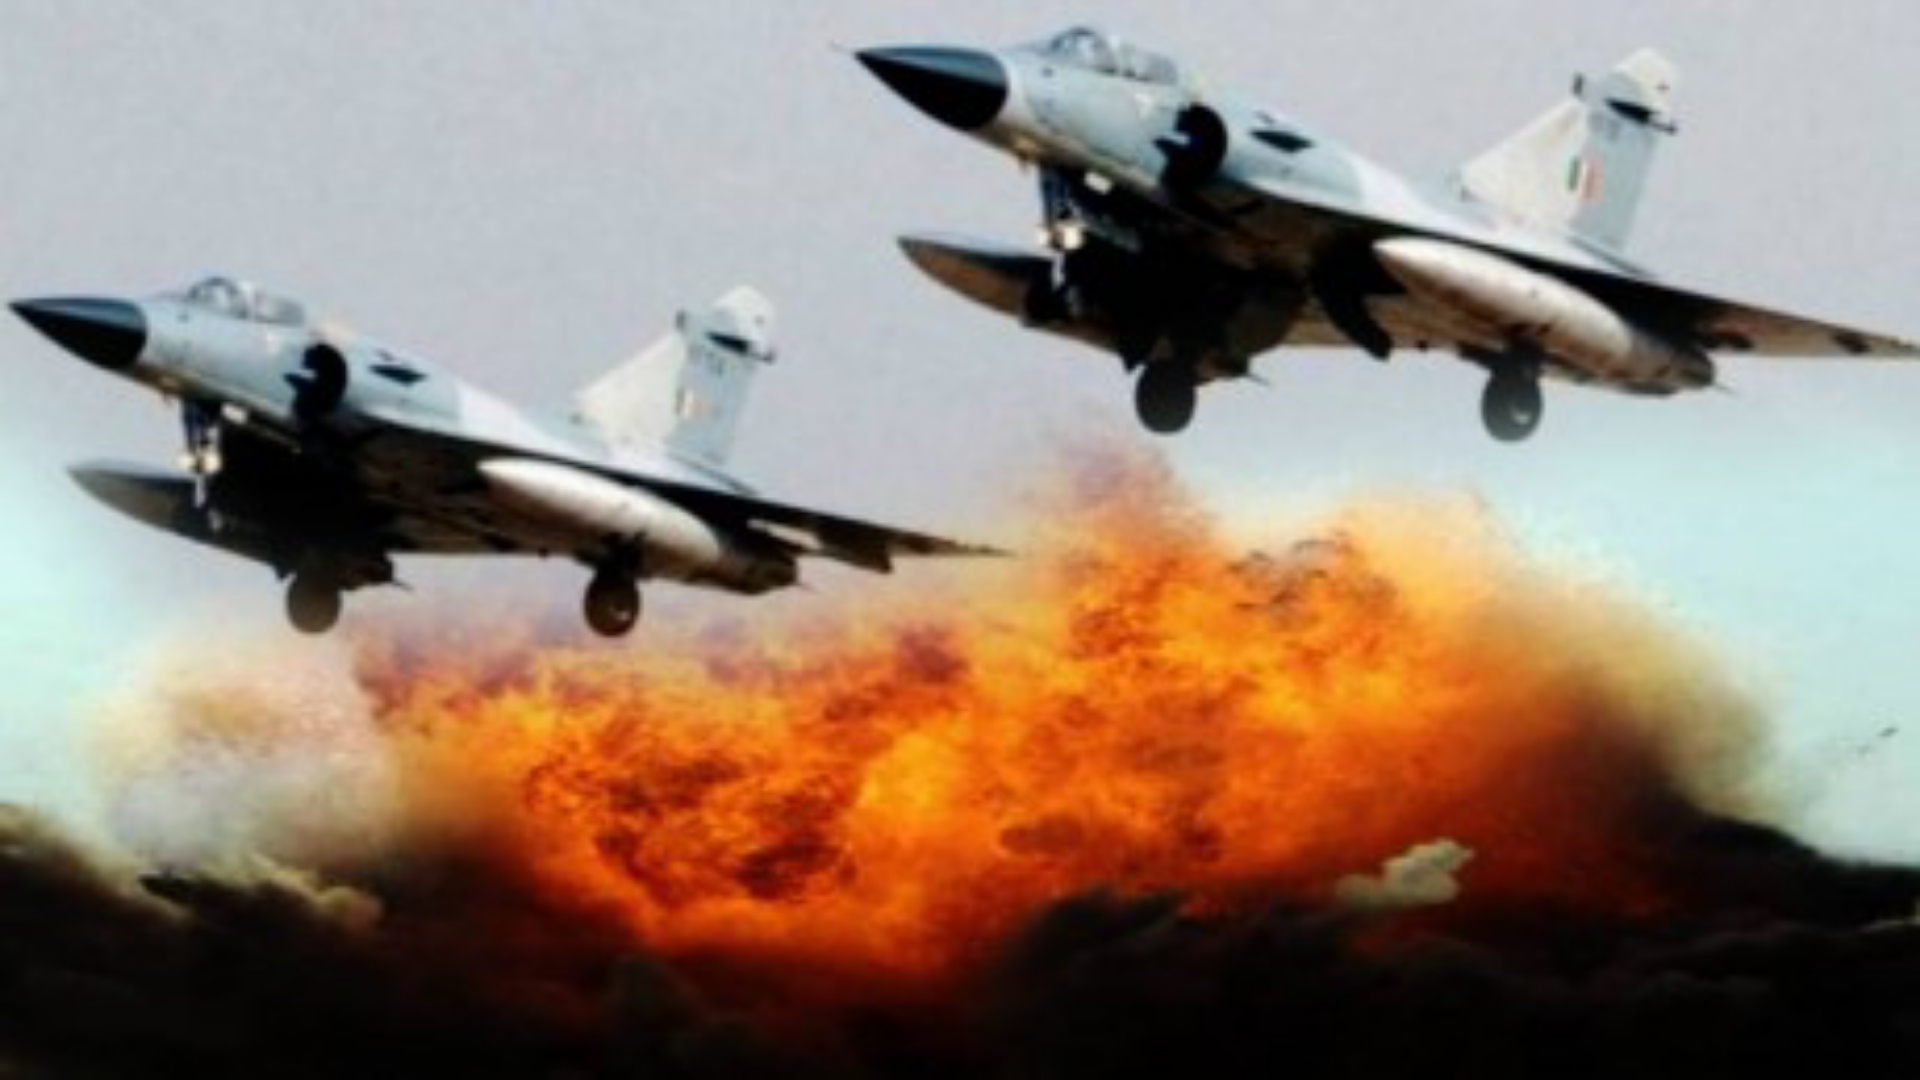 Airstrike in Pakistan: ईरान के हवाई हमले से बौखलाया पाकिस्तान, बोला बुरा हो सकता है कार्रवाई का अंजाम